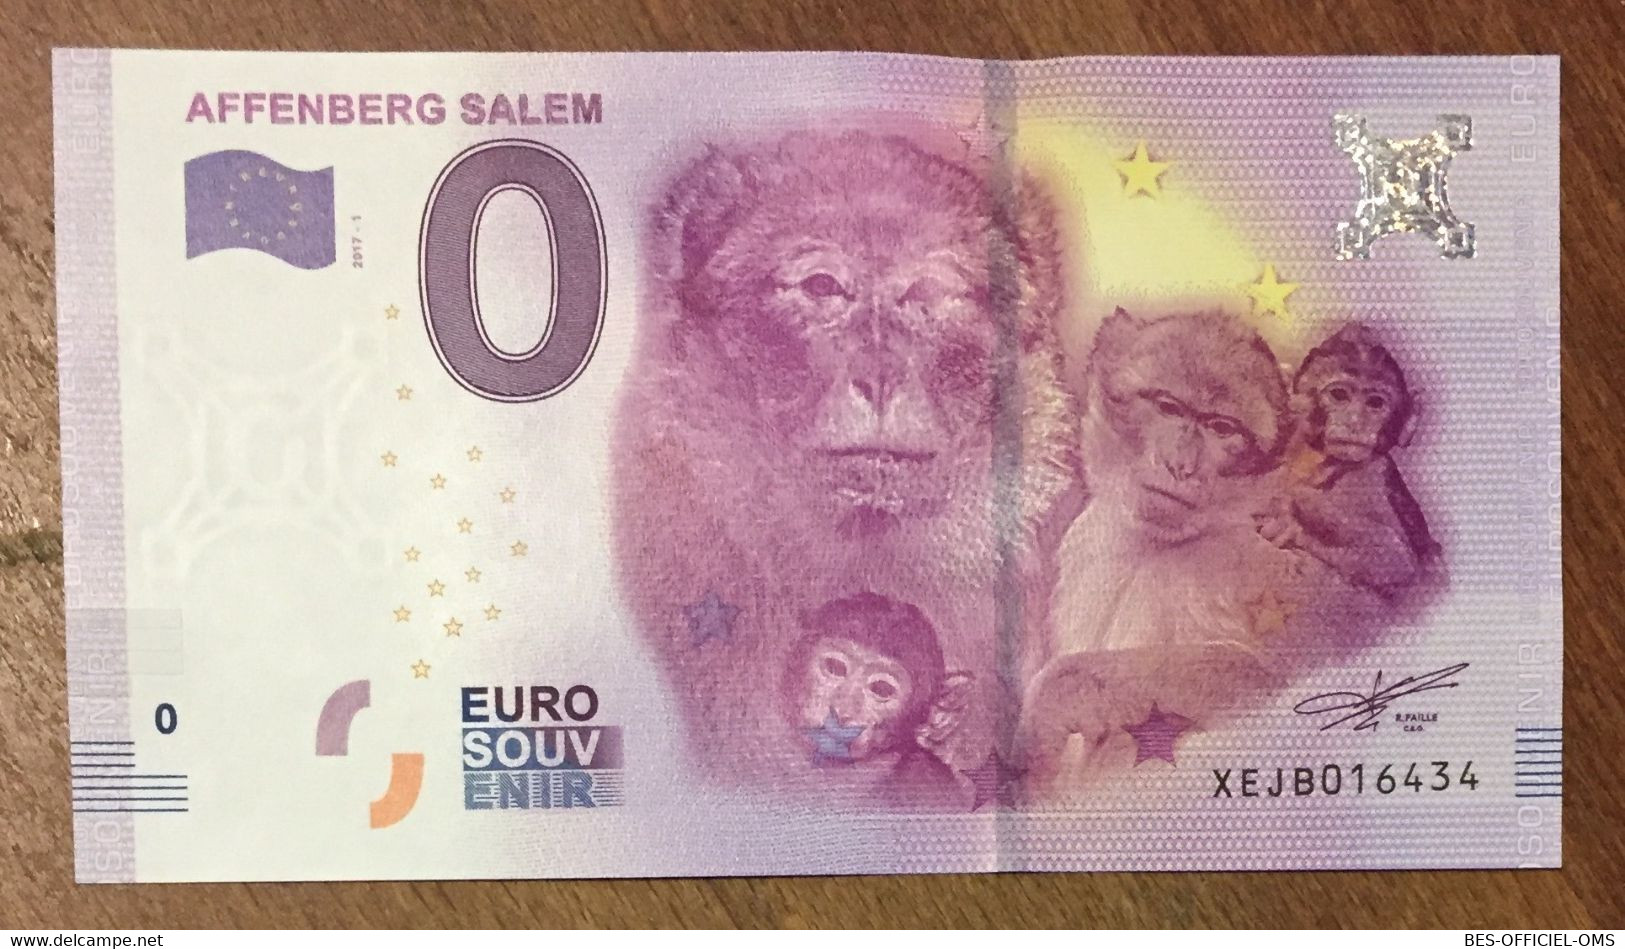 2017 BILLET 0 EURO SOUVENIR ALLEMAGNE DEUTSCHLAND AFFENBERG SALEM SINGES ZERO 0 EURO SCHEIN BANKNOTE PAPER MONEY - [17] Fictifs & Specimens